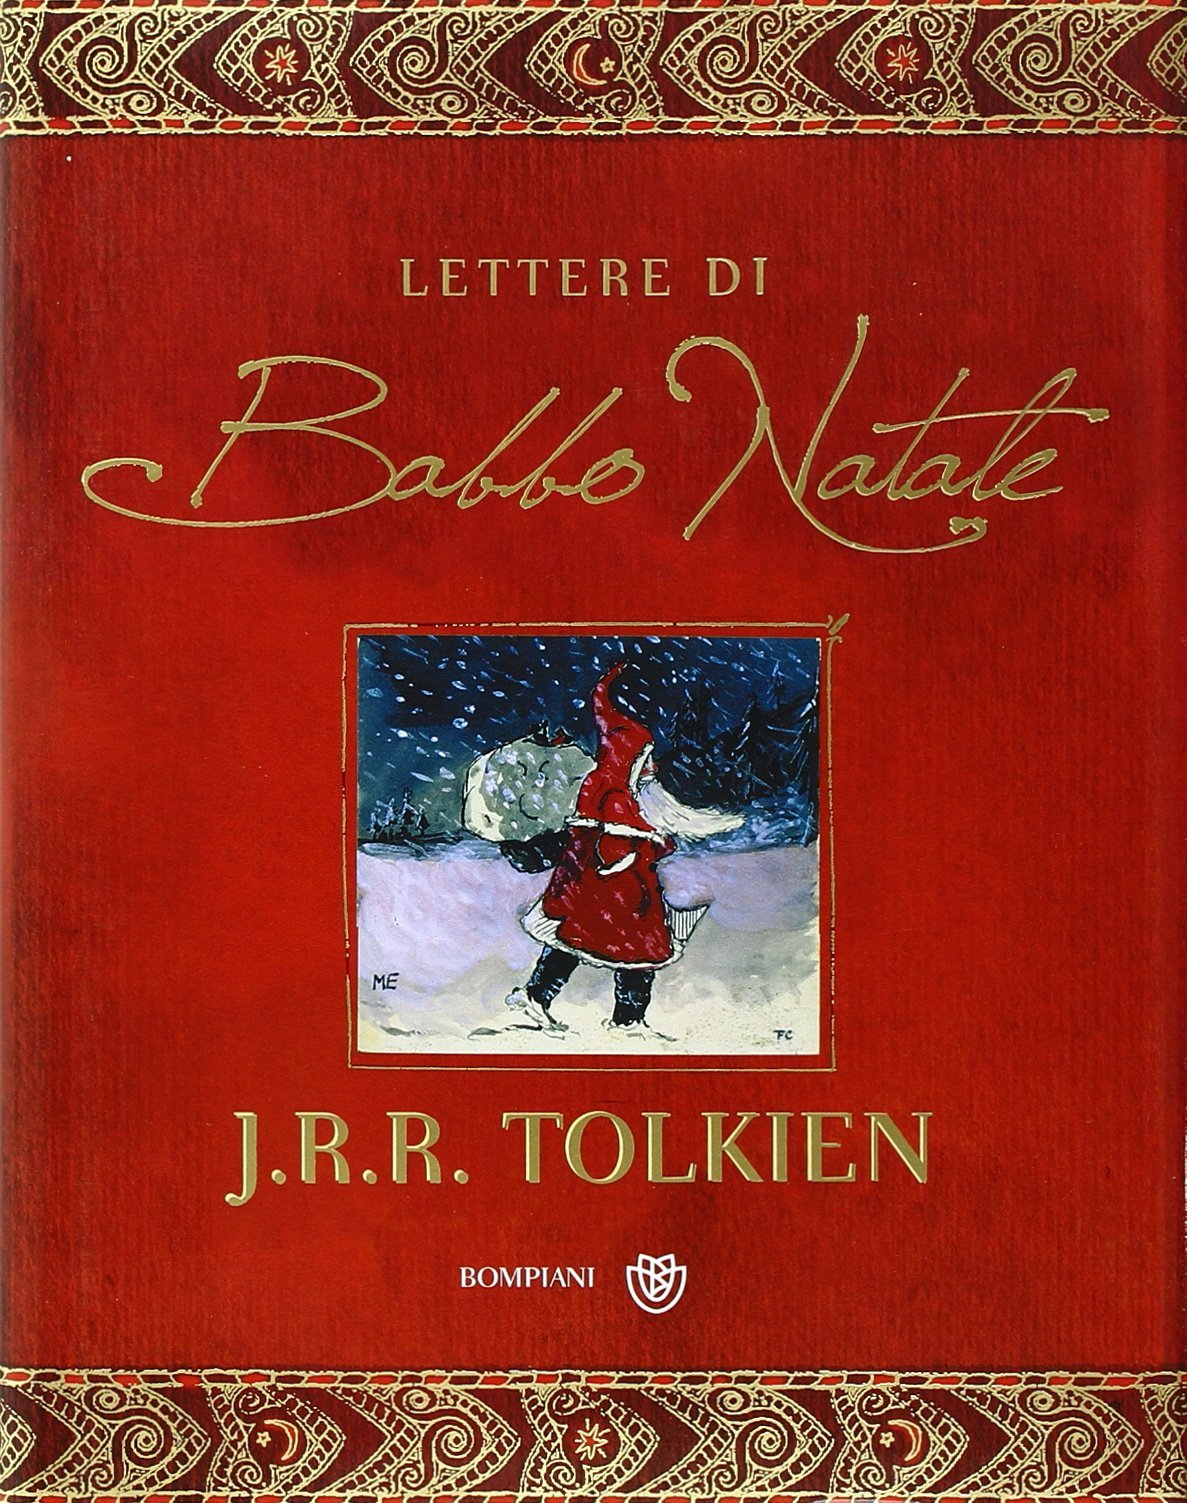 J.R.R. Tolkien: Le lettere di Babbo Natale (Hardcover, Italiano language, 2004, Bompiani)